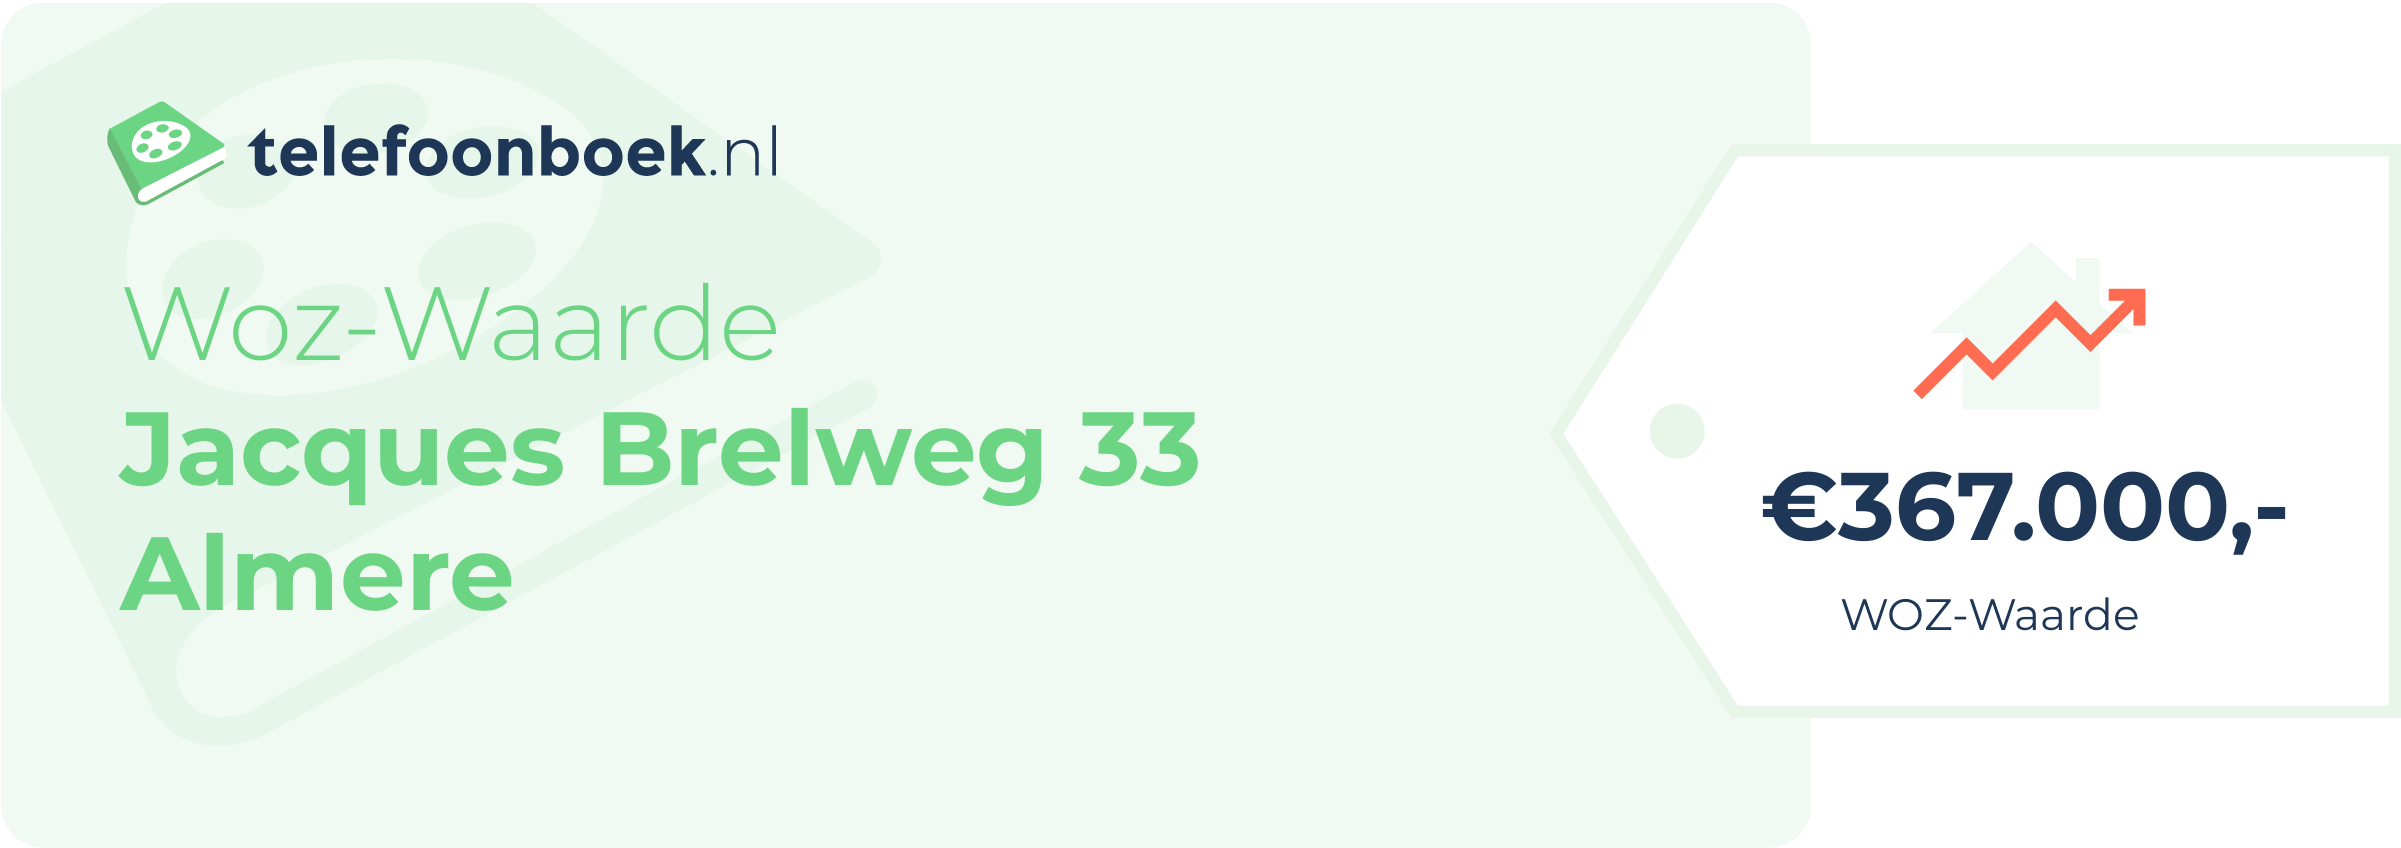 WOZ-waarde Jacques Brelweg 33 Almere